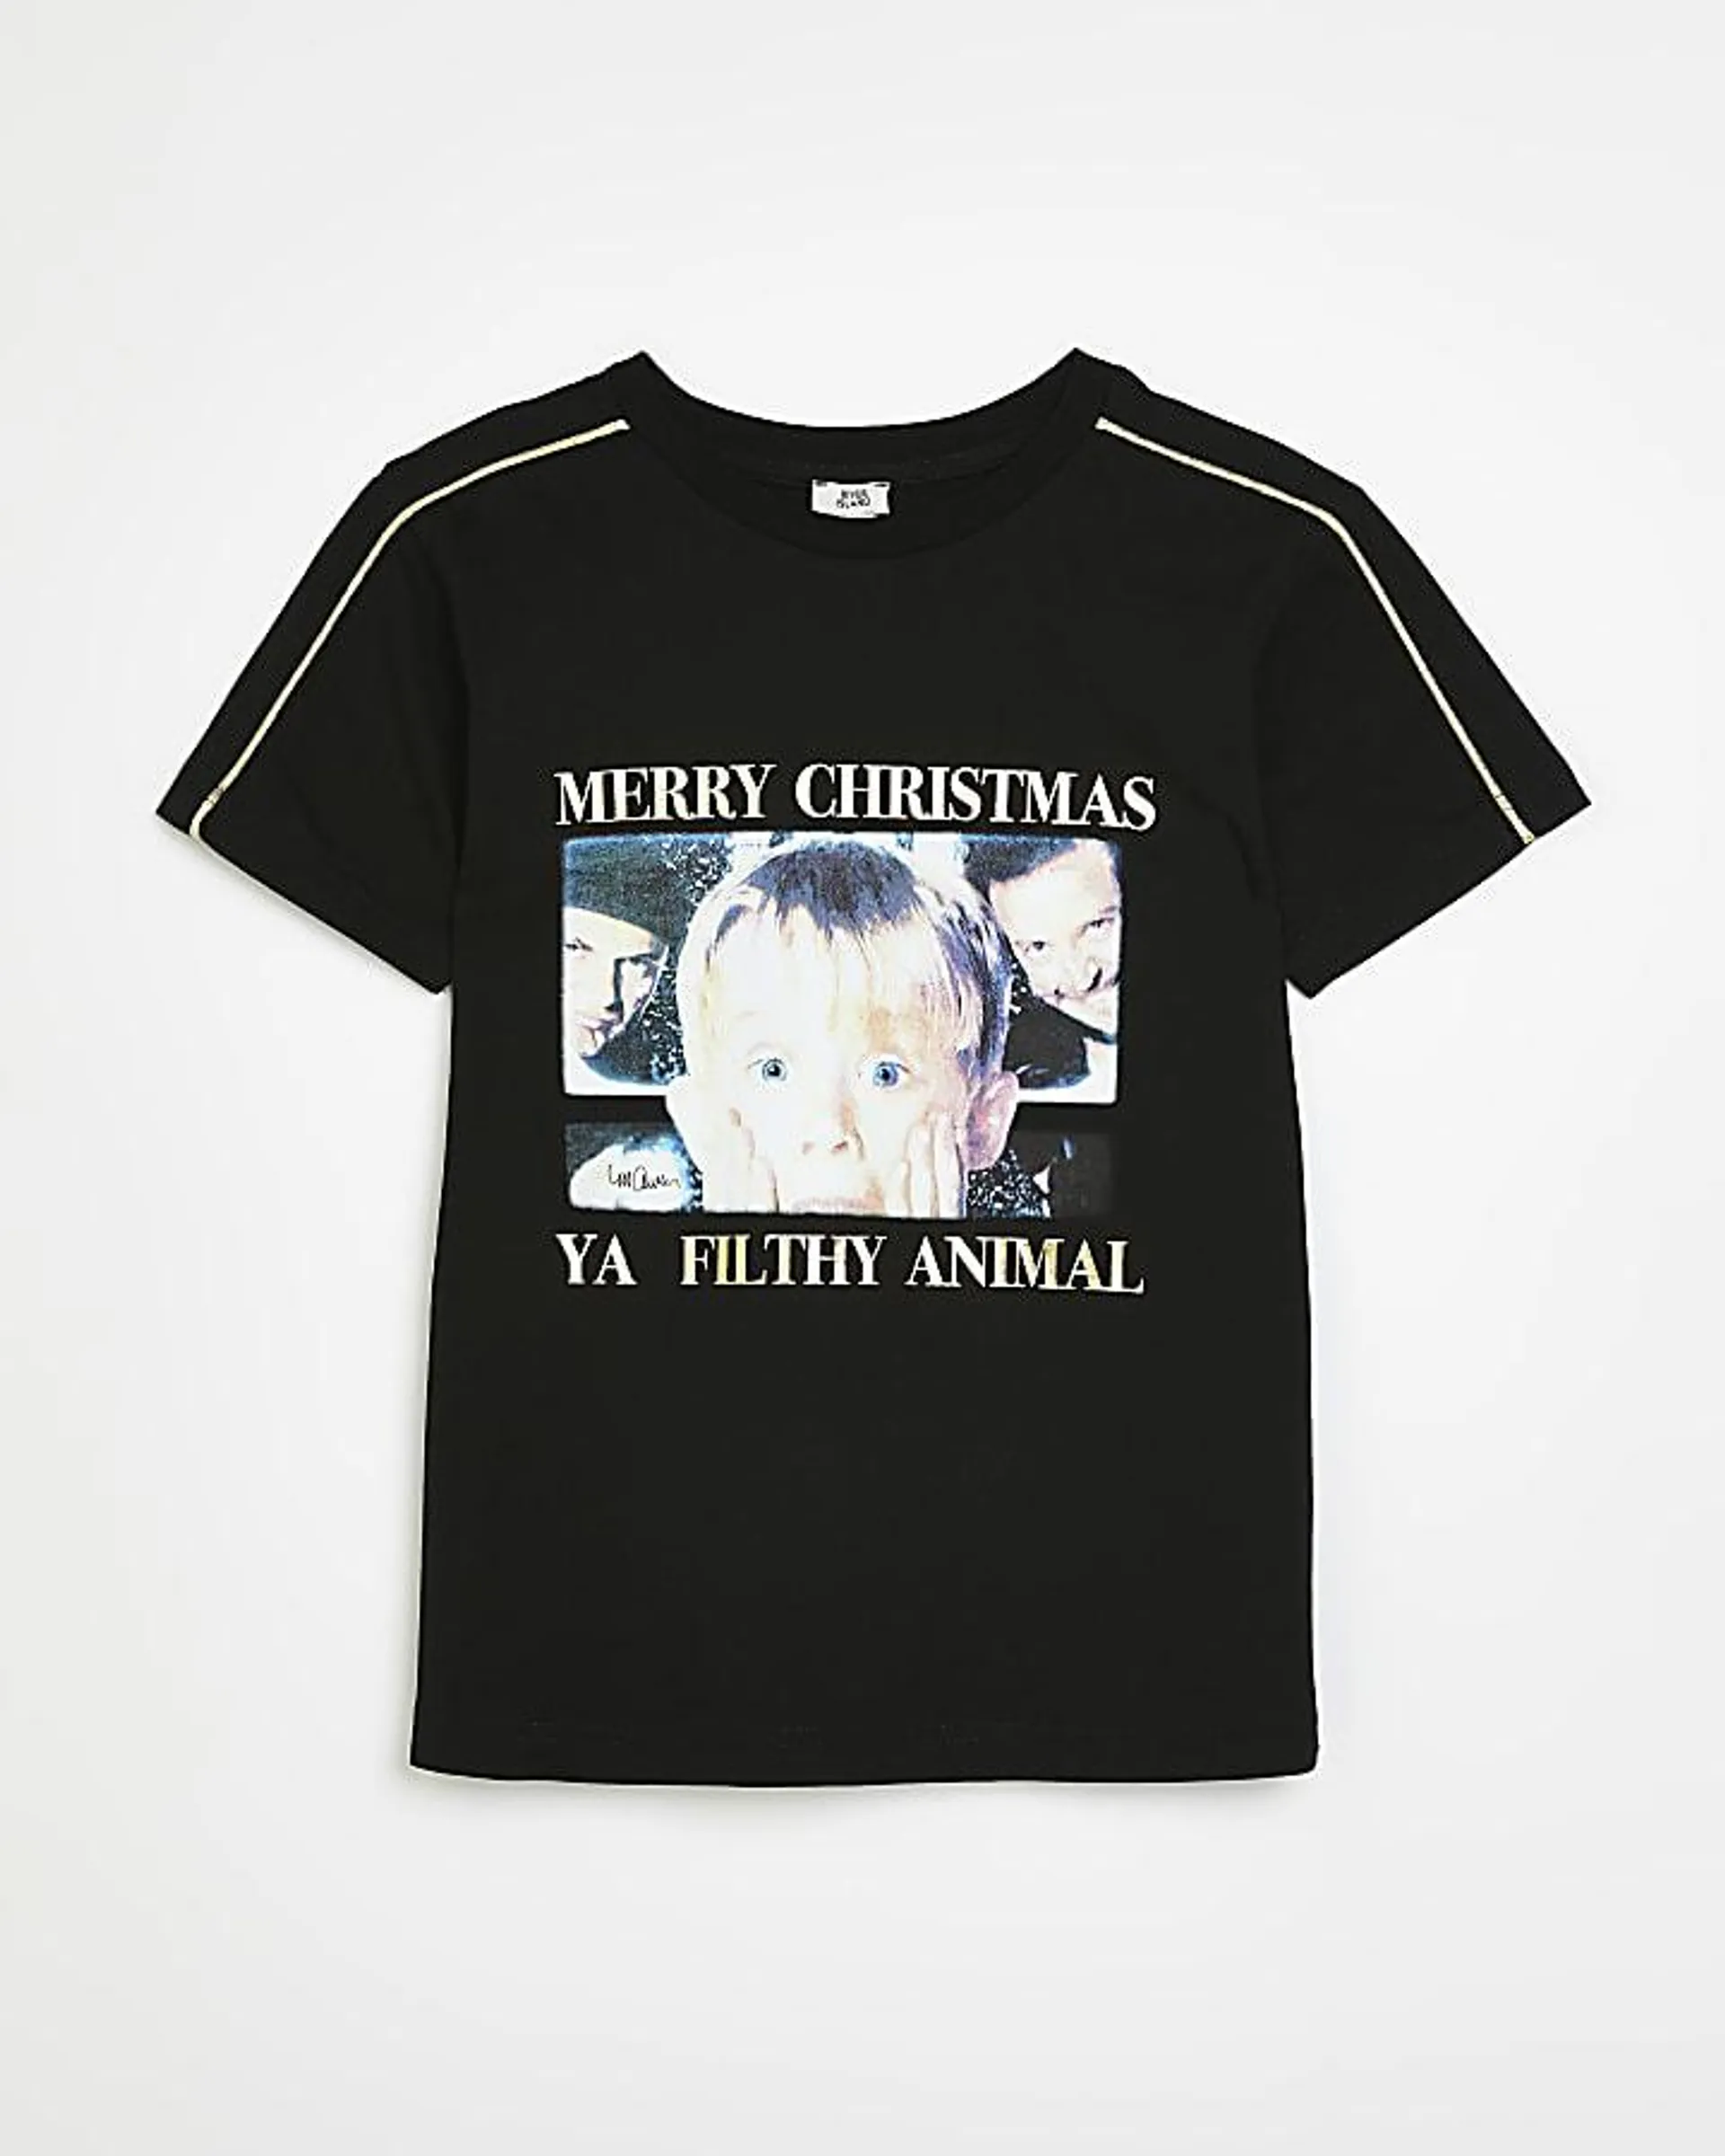 Boys Black Home Alone Christmas T-shirt